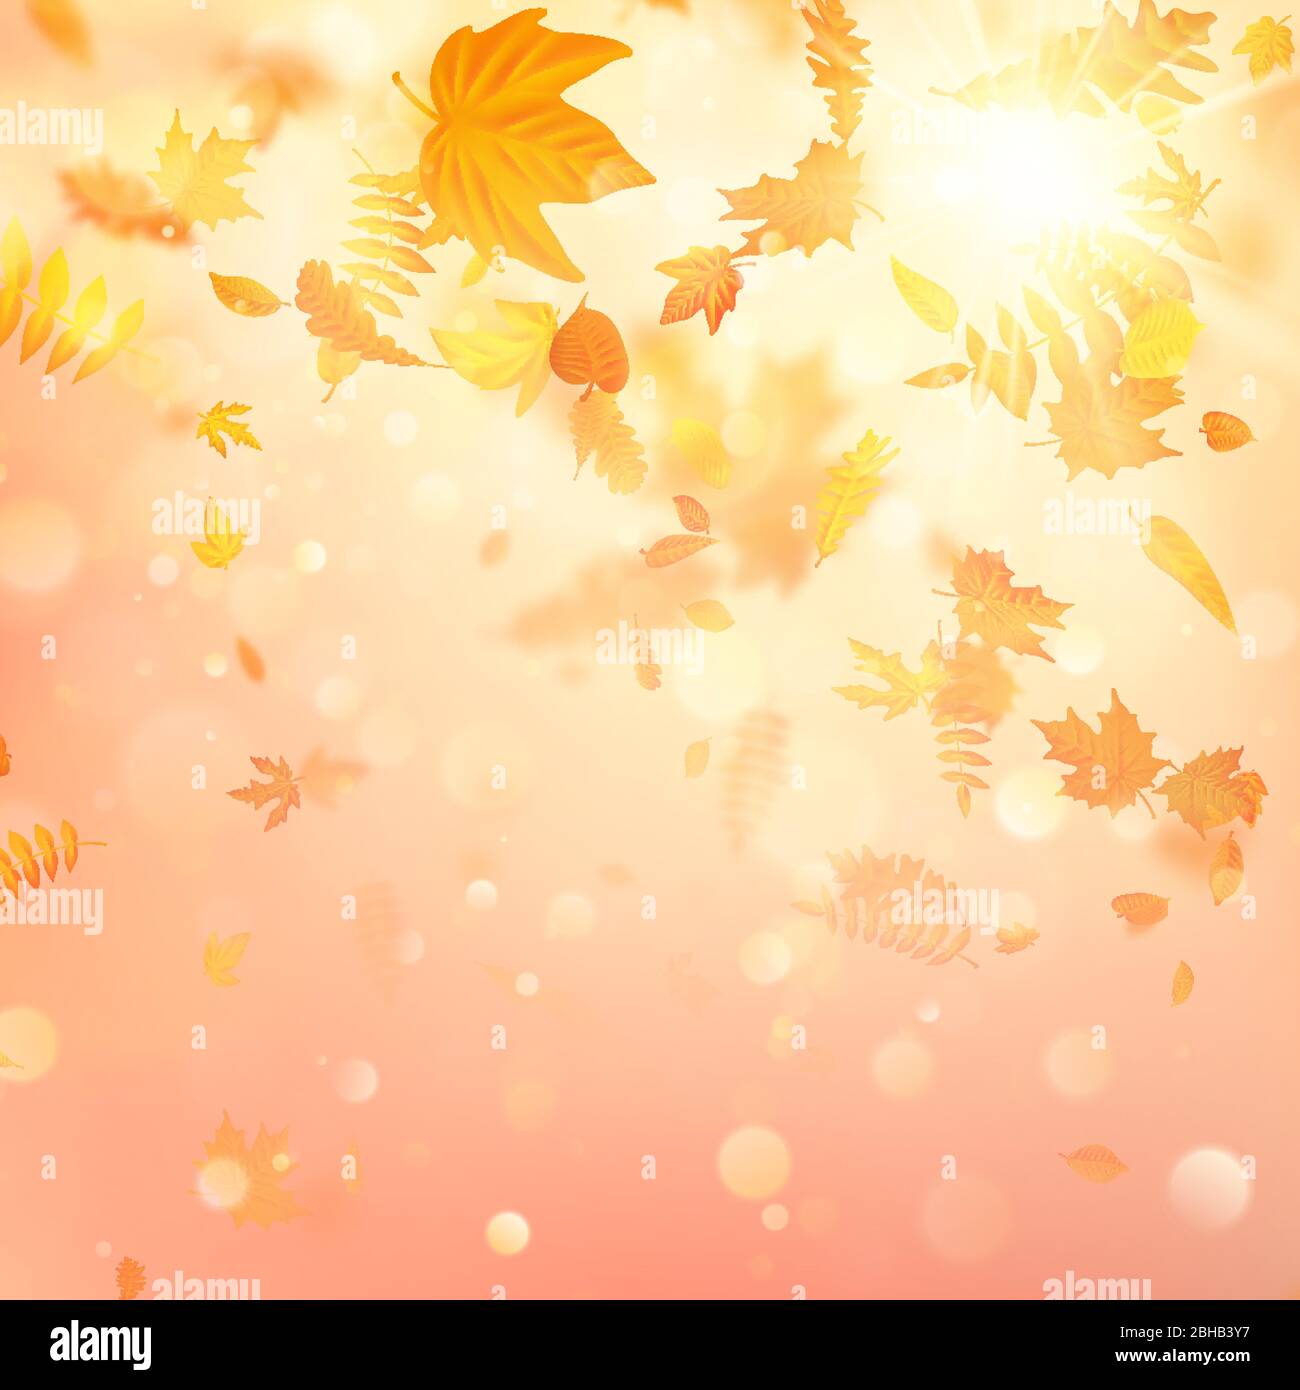 Composition en automne avec feuilles d'érable. Vecteur EPS 10 Illustration de Vecteur